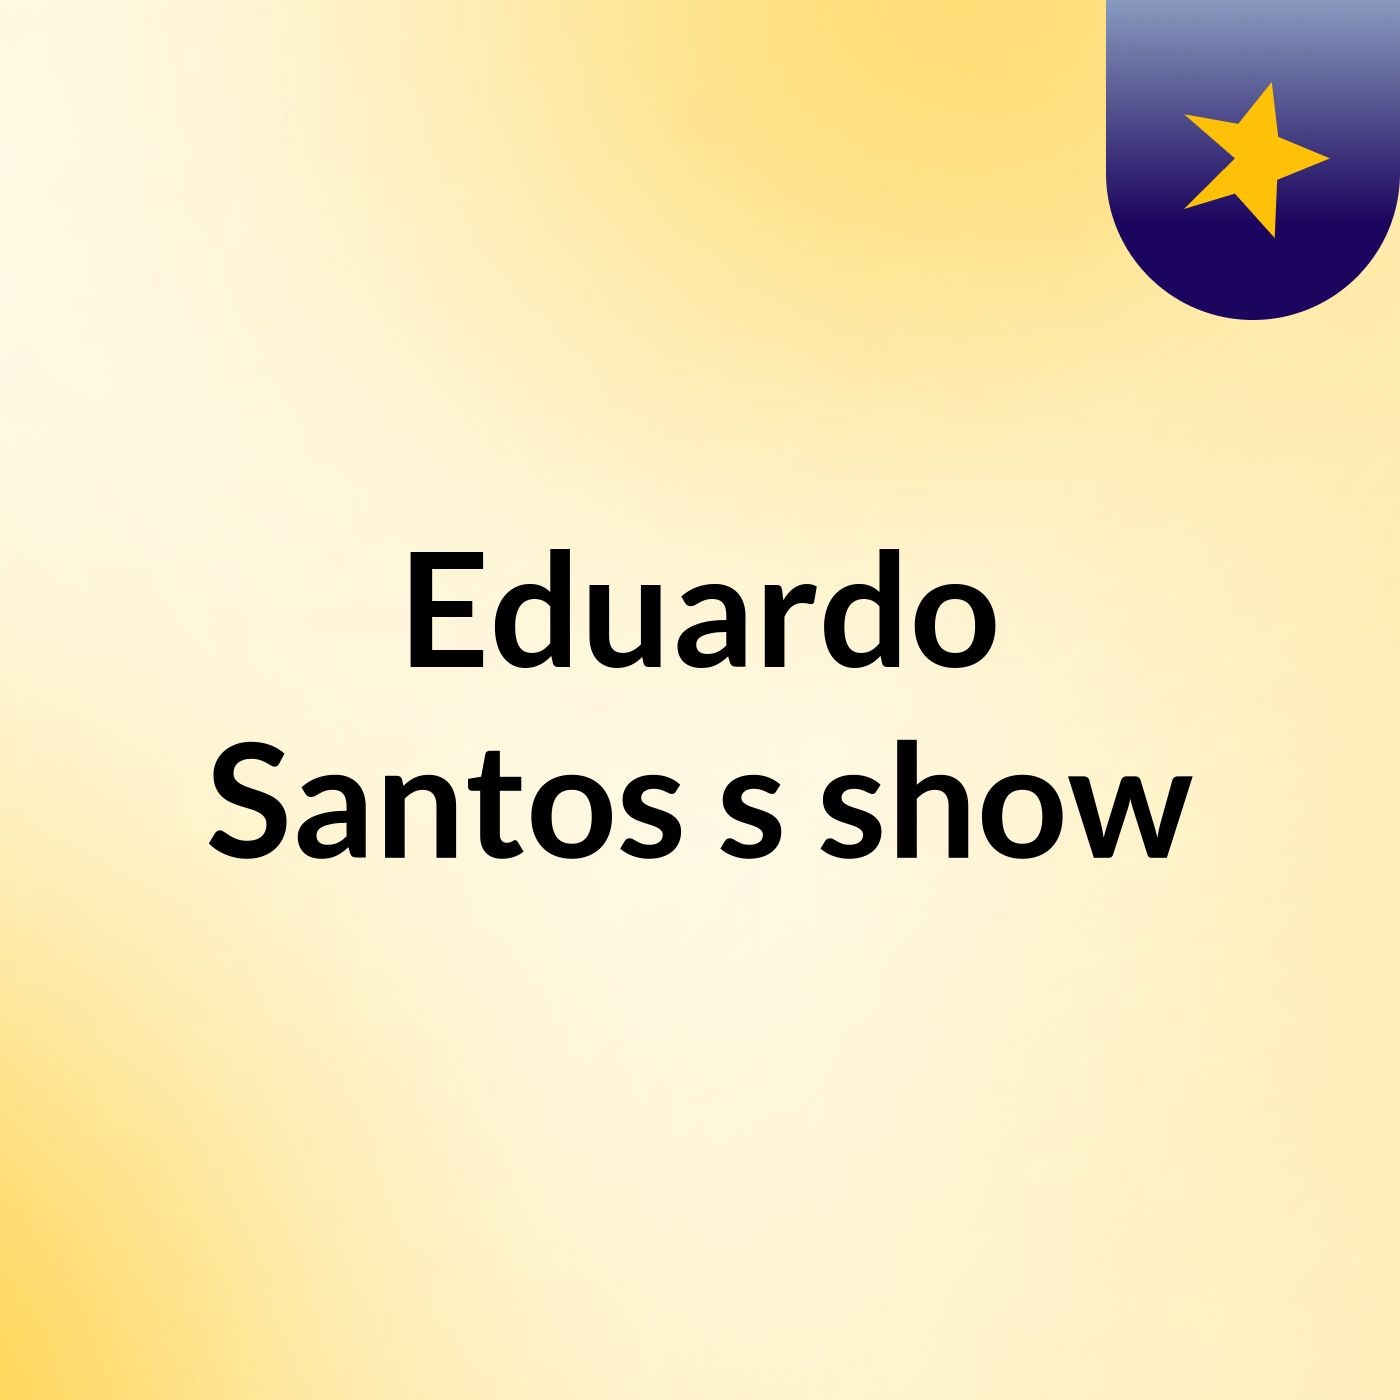 Episódio 17 - Eduardo Santos's show